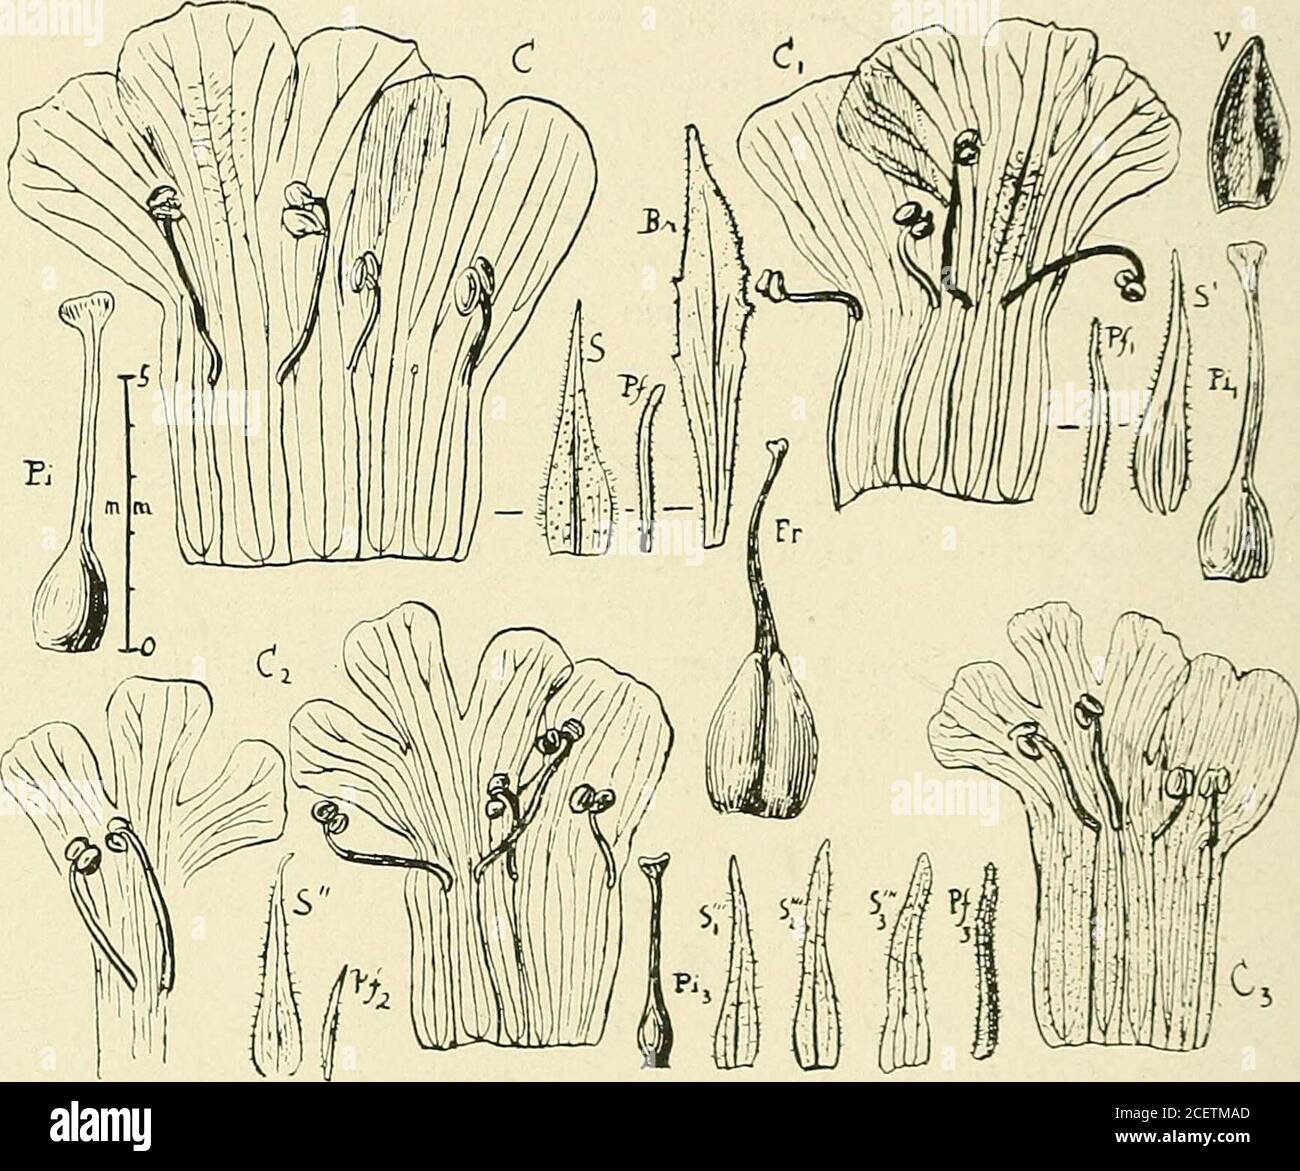 . Bulletin de la Société botanique de Genève. l. bleues. — In campo pr. Tobaty [Hassler, n.6326!] : Herb. 0,3-0,8 m., pet. violacea, f. glutinosa. — Paraguay dusud [Kuntze, s. ri. !] : p glabriuscula 0. K. — Argentine : Jujuy(Kuntze, 1898). Stemodia orriculata Minod sp. n. Badix?Caulis primarius erectus, 3 mm. crassus et ultra, superne ±2 i BULLETIN DE l.. SOCIETE BOTANIQUE DE GENEVE (7(ii ramosus, tomentosus pilis crispis, irregulariter insertis; rami erecti,subalati. Folia tenuia opposita, oiagna, rotundata, superiora ovata,omnia basi attenuata, late auriculata amplexicaulia ; dentata velcr Stock Photo